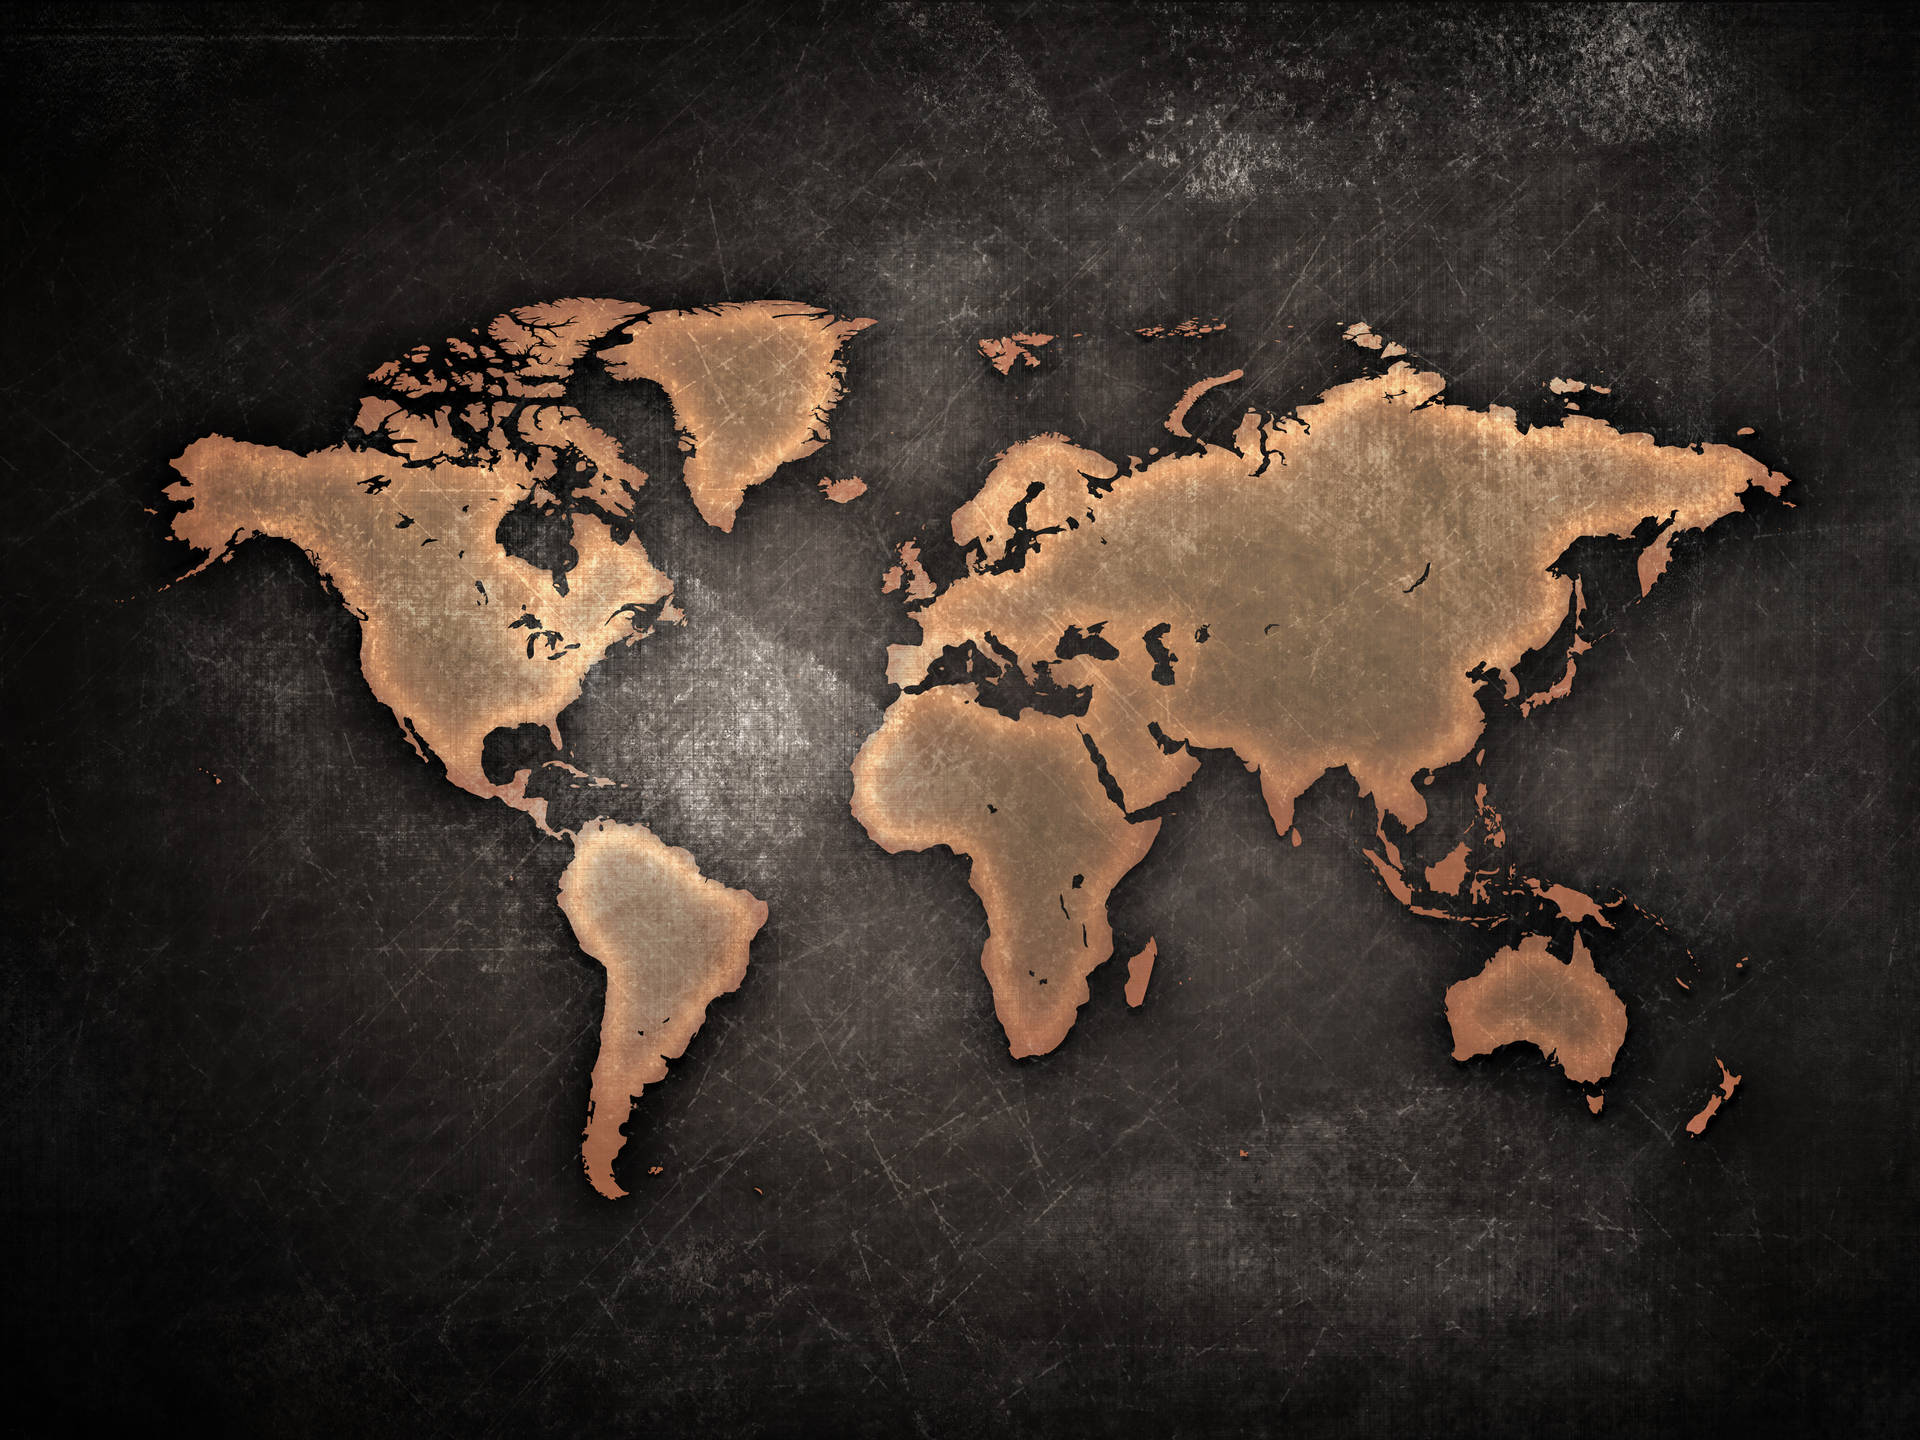 Beautiful Global Diversity - High-resolution World Map Desktop Background Wallpaper